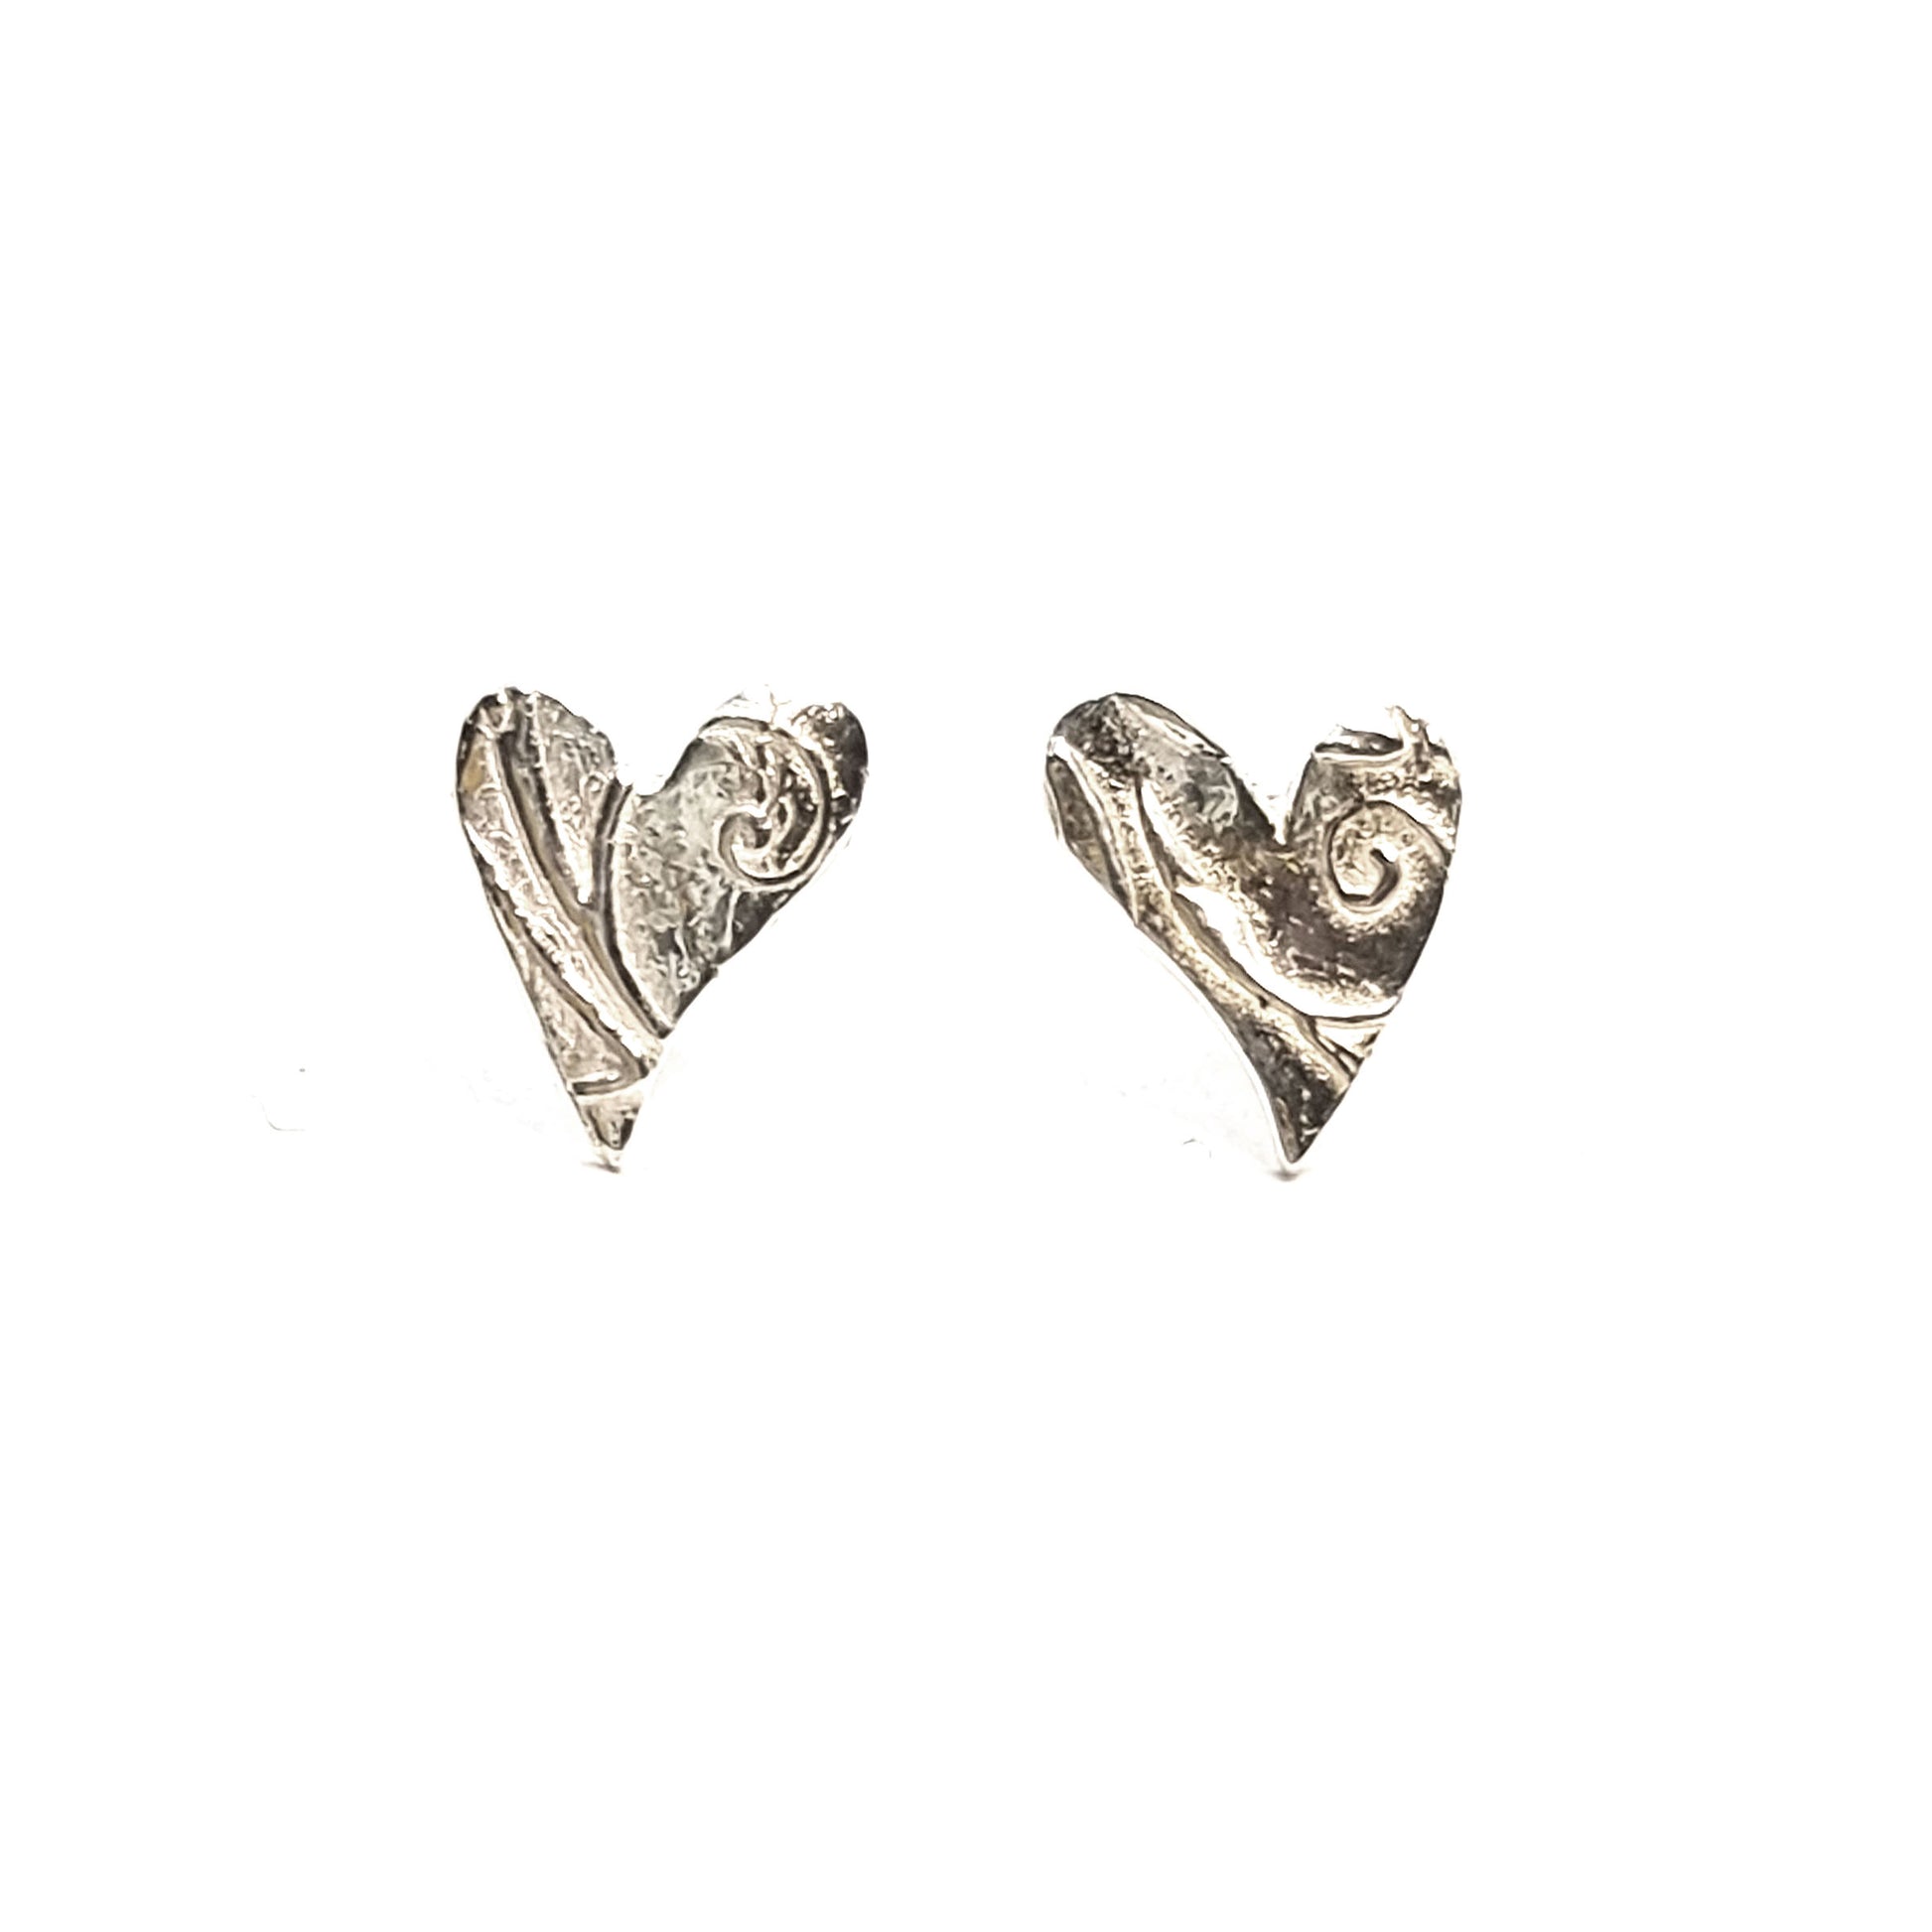 Silver asymmetrical heart stud earrings with a swirl pattern.